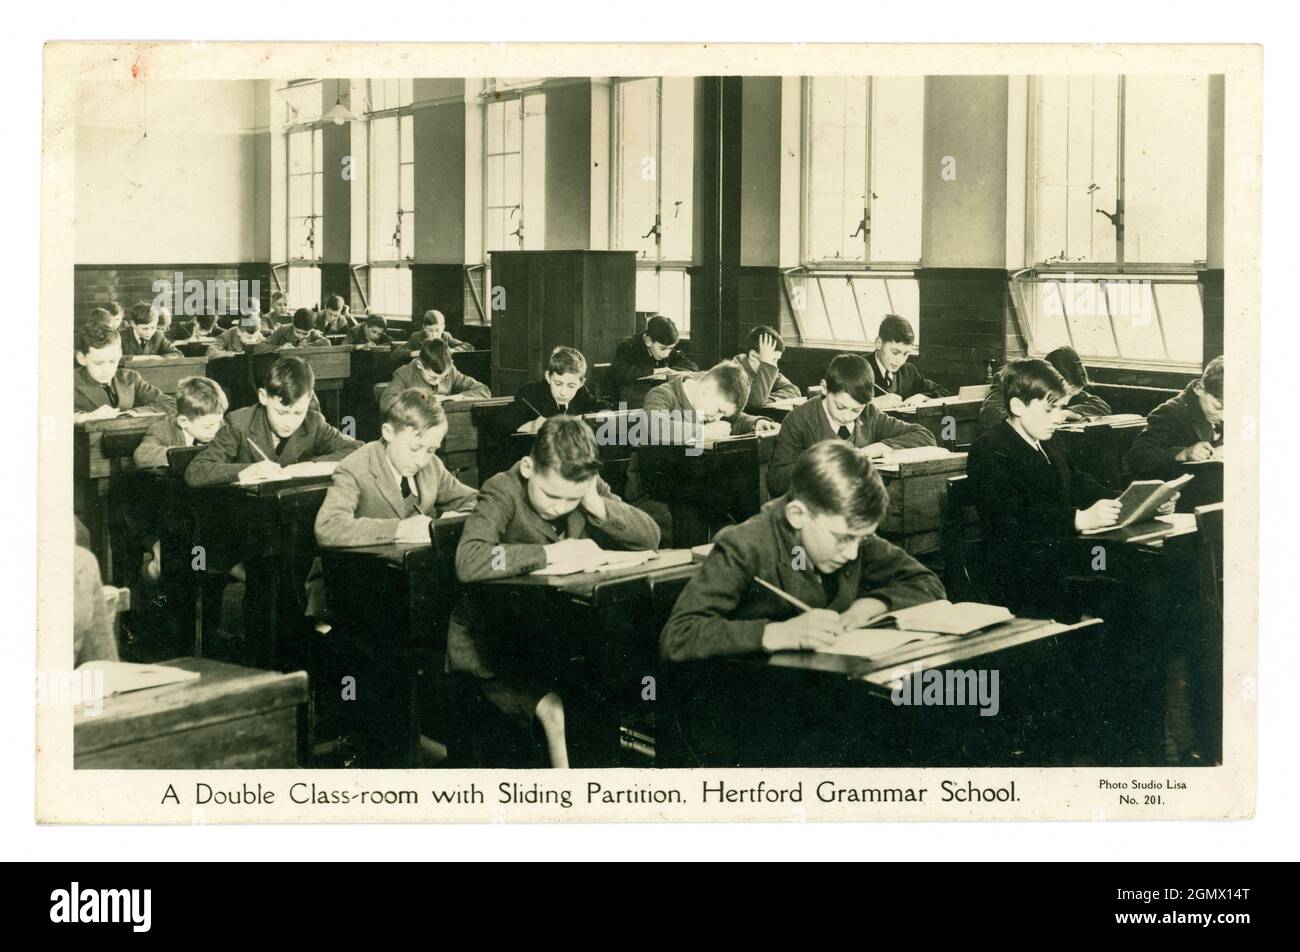 Cartolina originale degli anni '30 con doppia classe, con partizione scorrevole, scuola di grammatica Hertford, ragazzi in giovane età alle scrivanie, dallo Studio Lisa Regno Unito Foto Stock